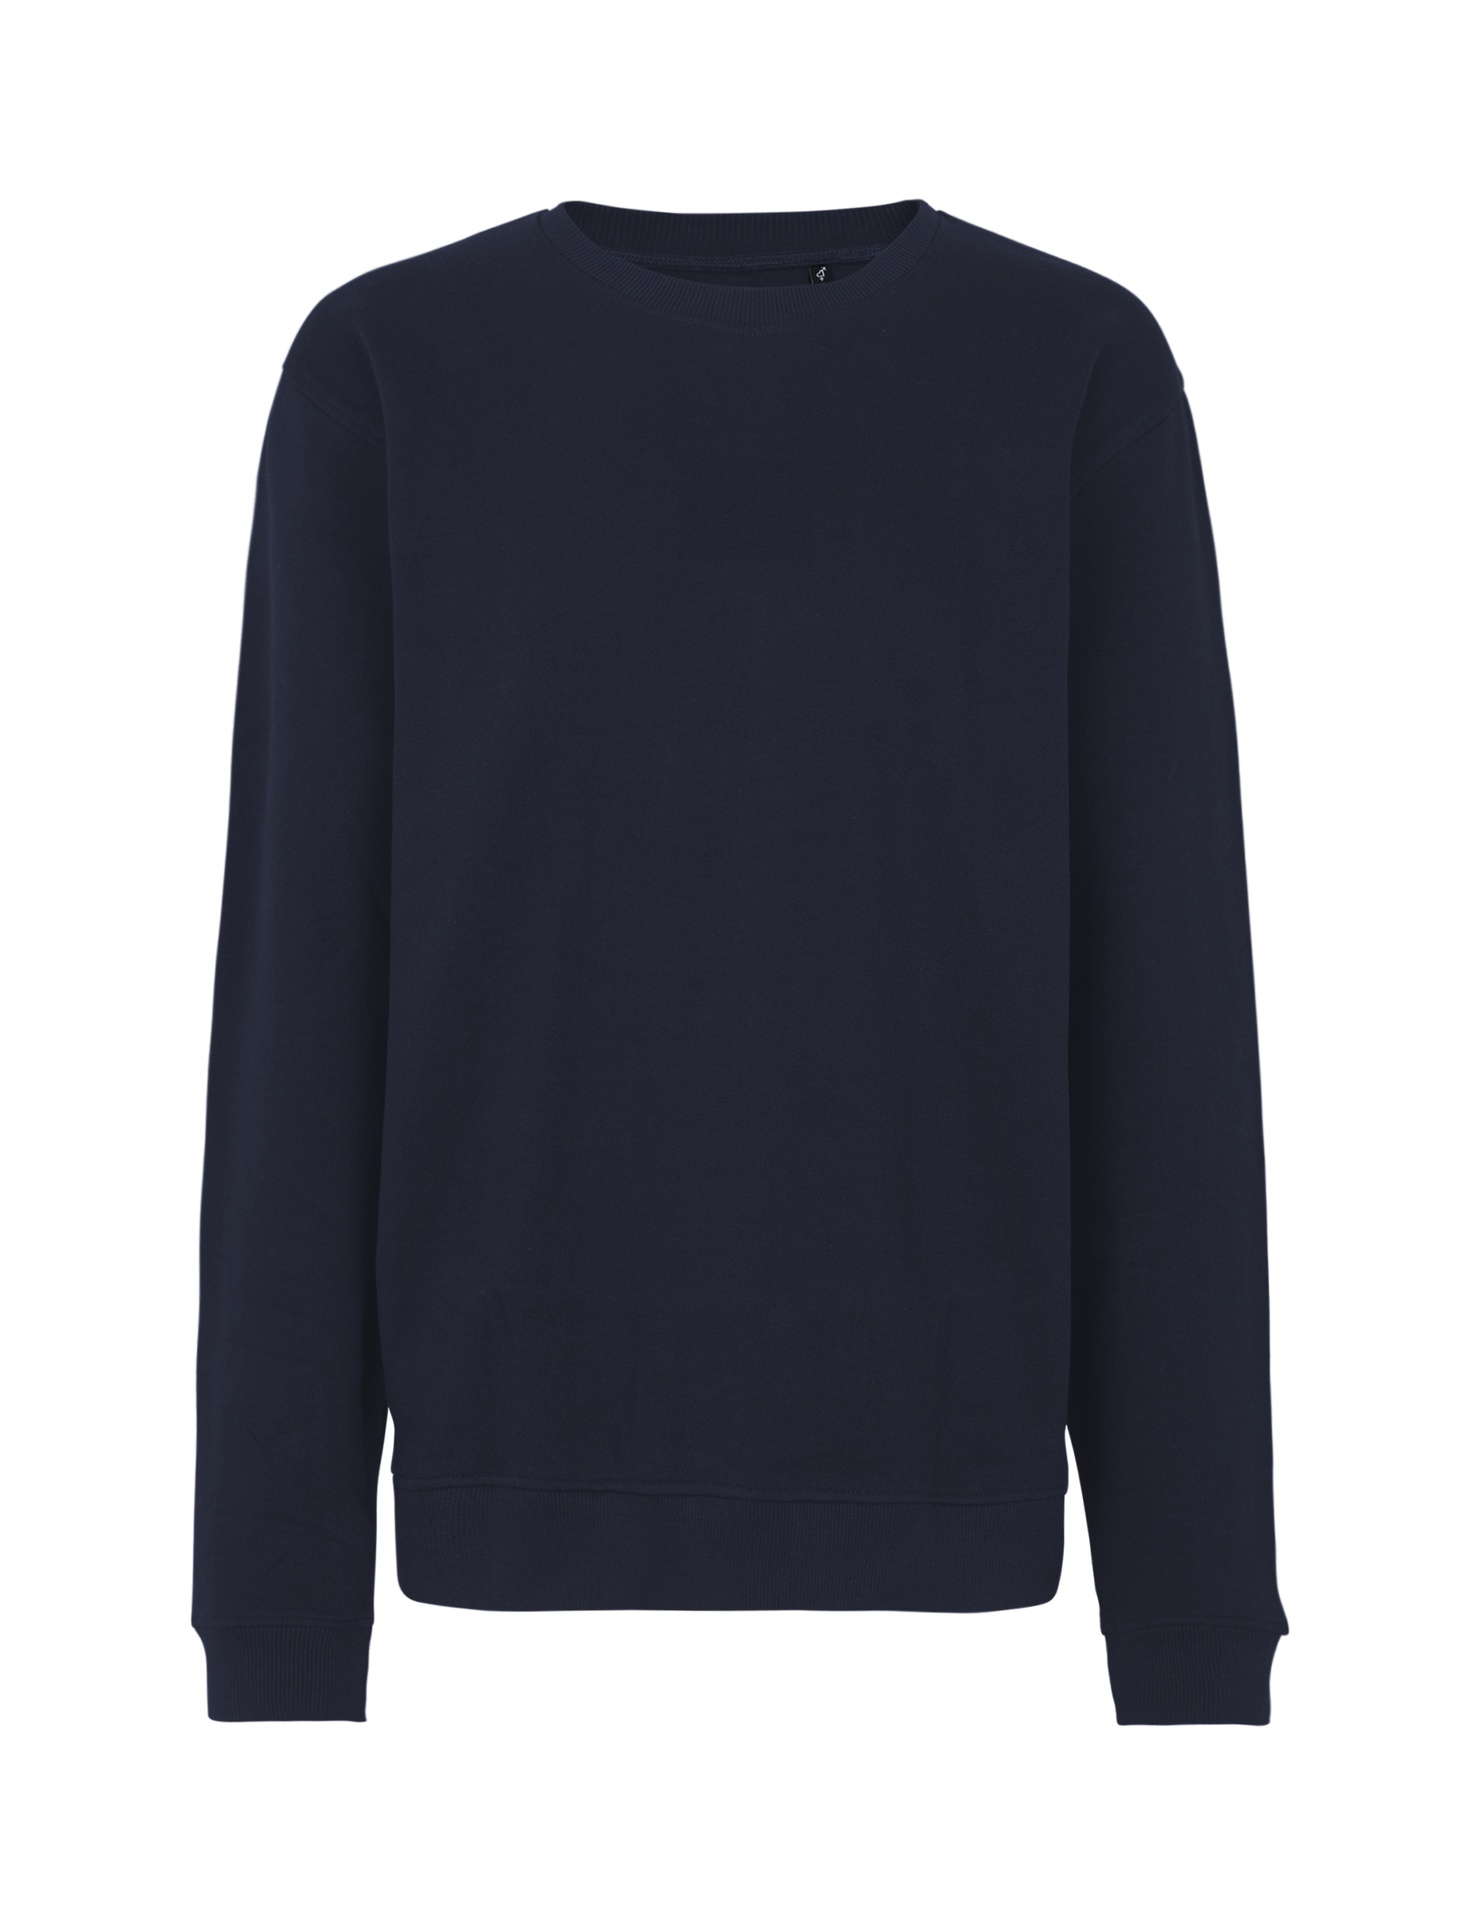 [PR/03535] Unisex Workwear Sweatshirt (Navy 04, 2XL)